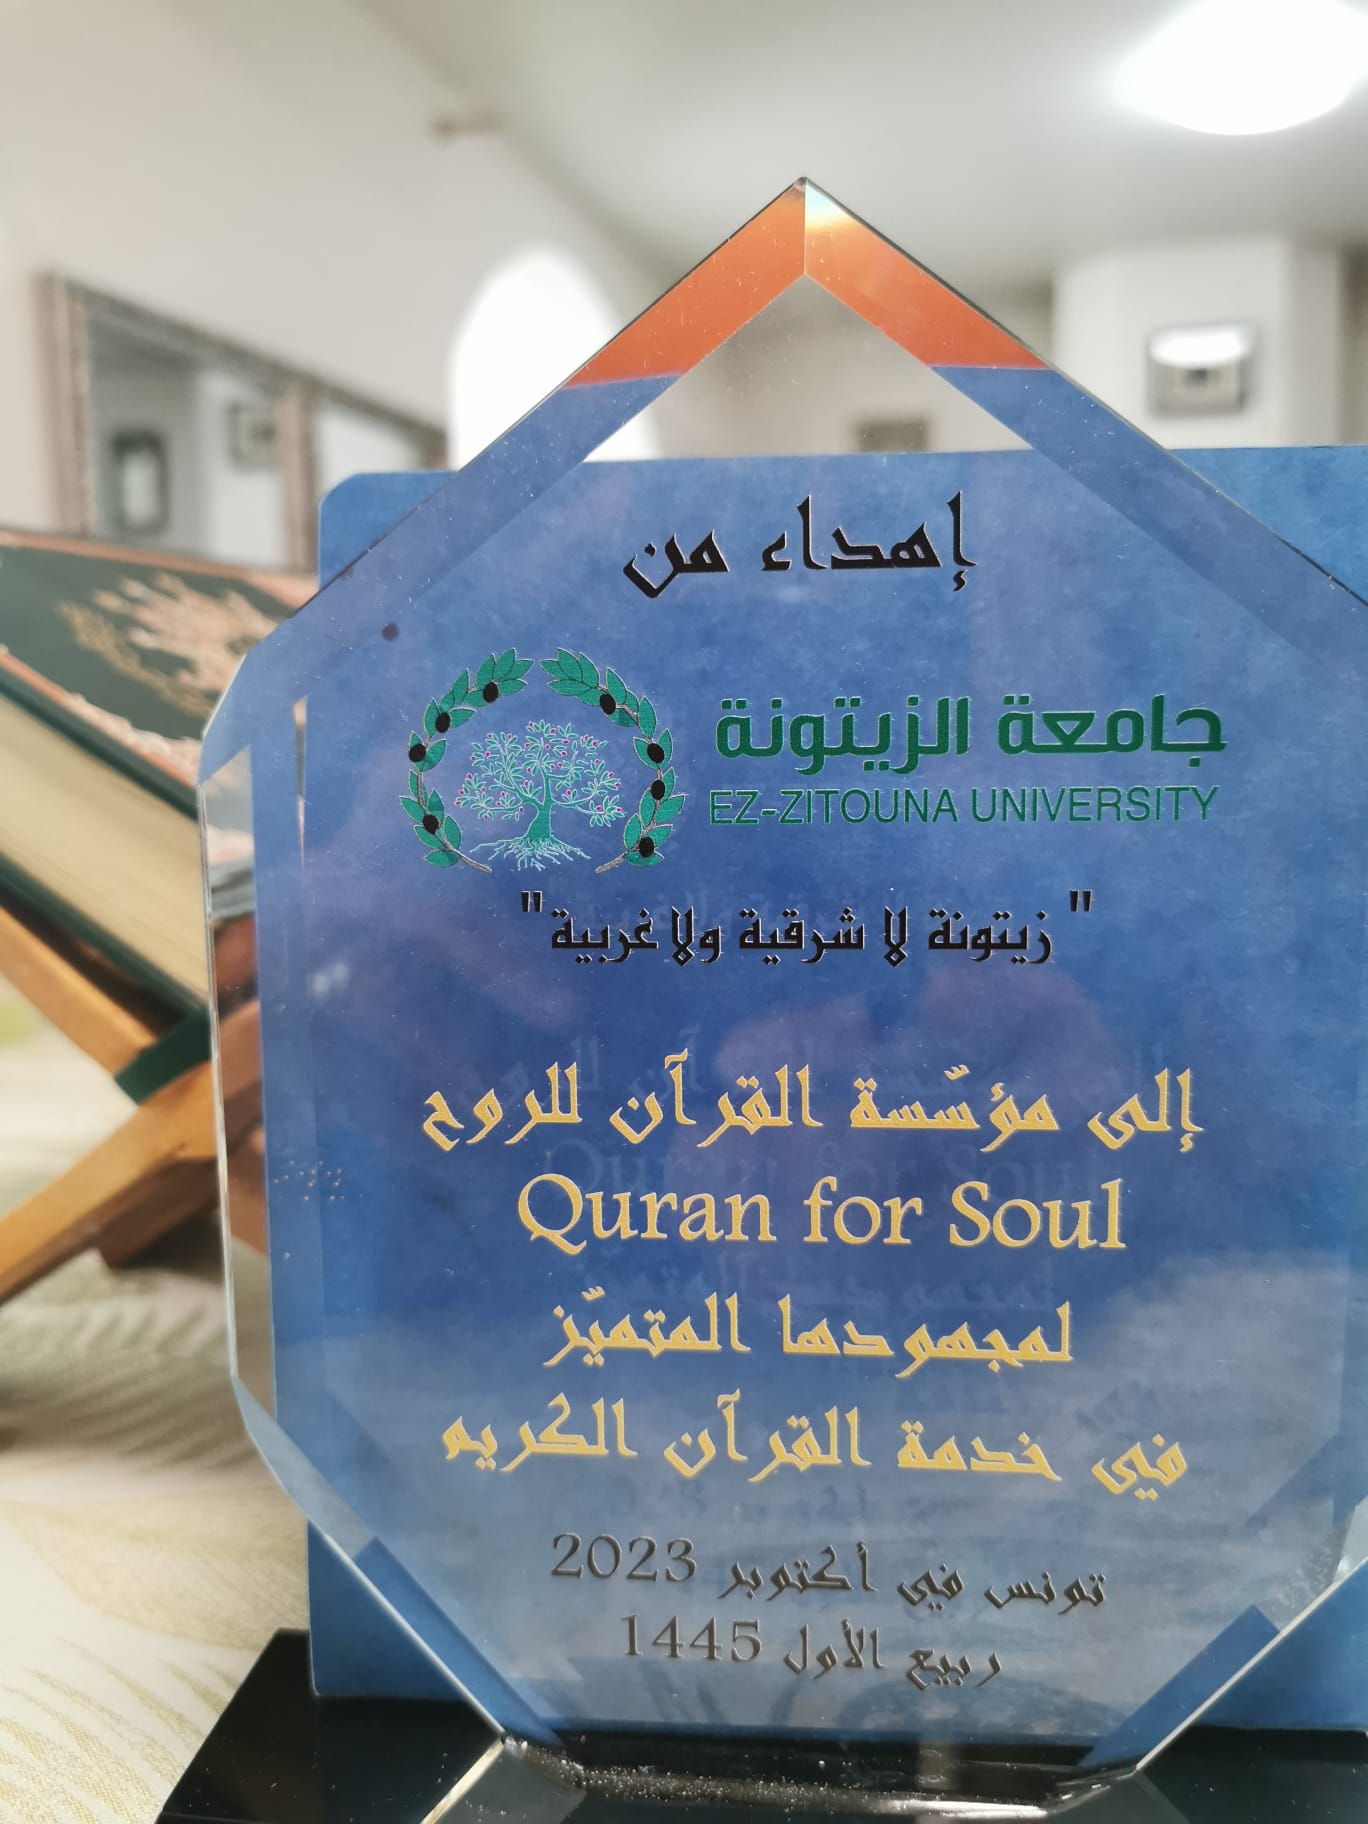 جامعة الزيتونة تكرم مؤسسة القرآن للروح لتفانيها في خدمة القرآن الكريم Quran Coran